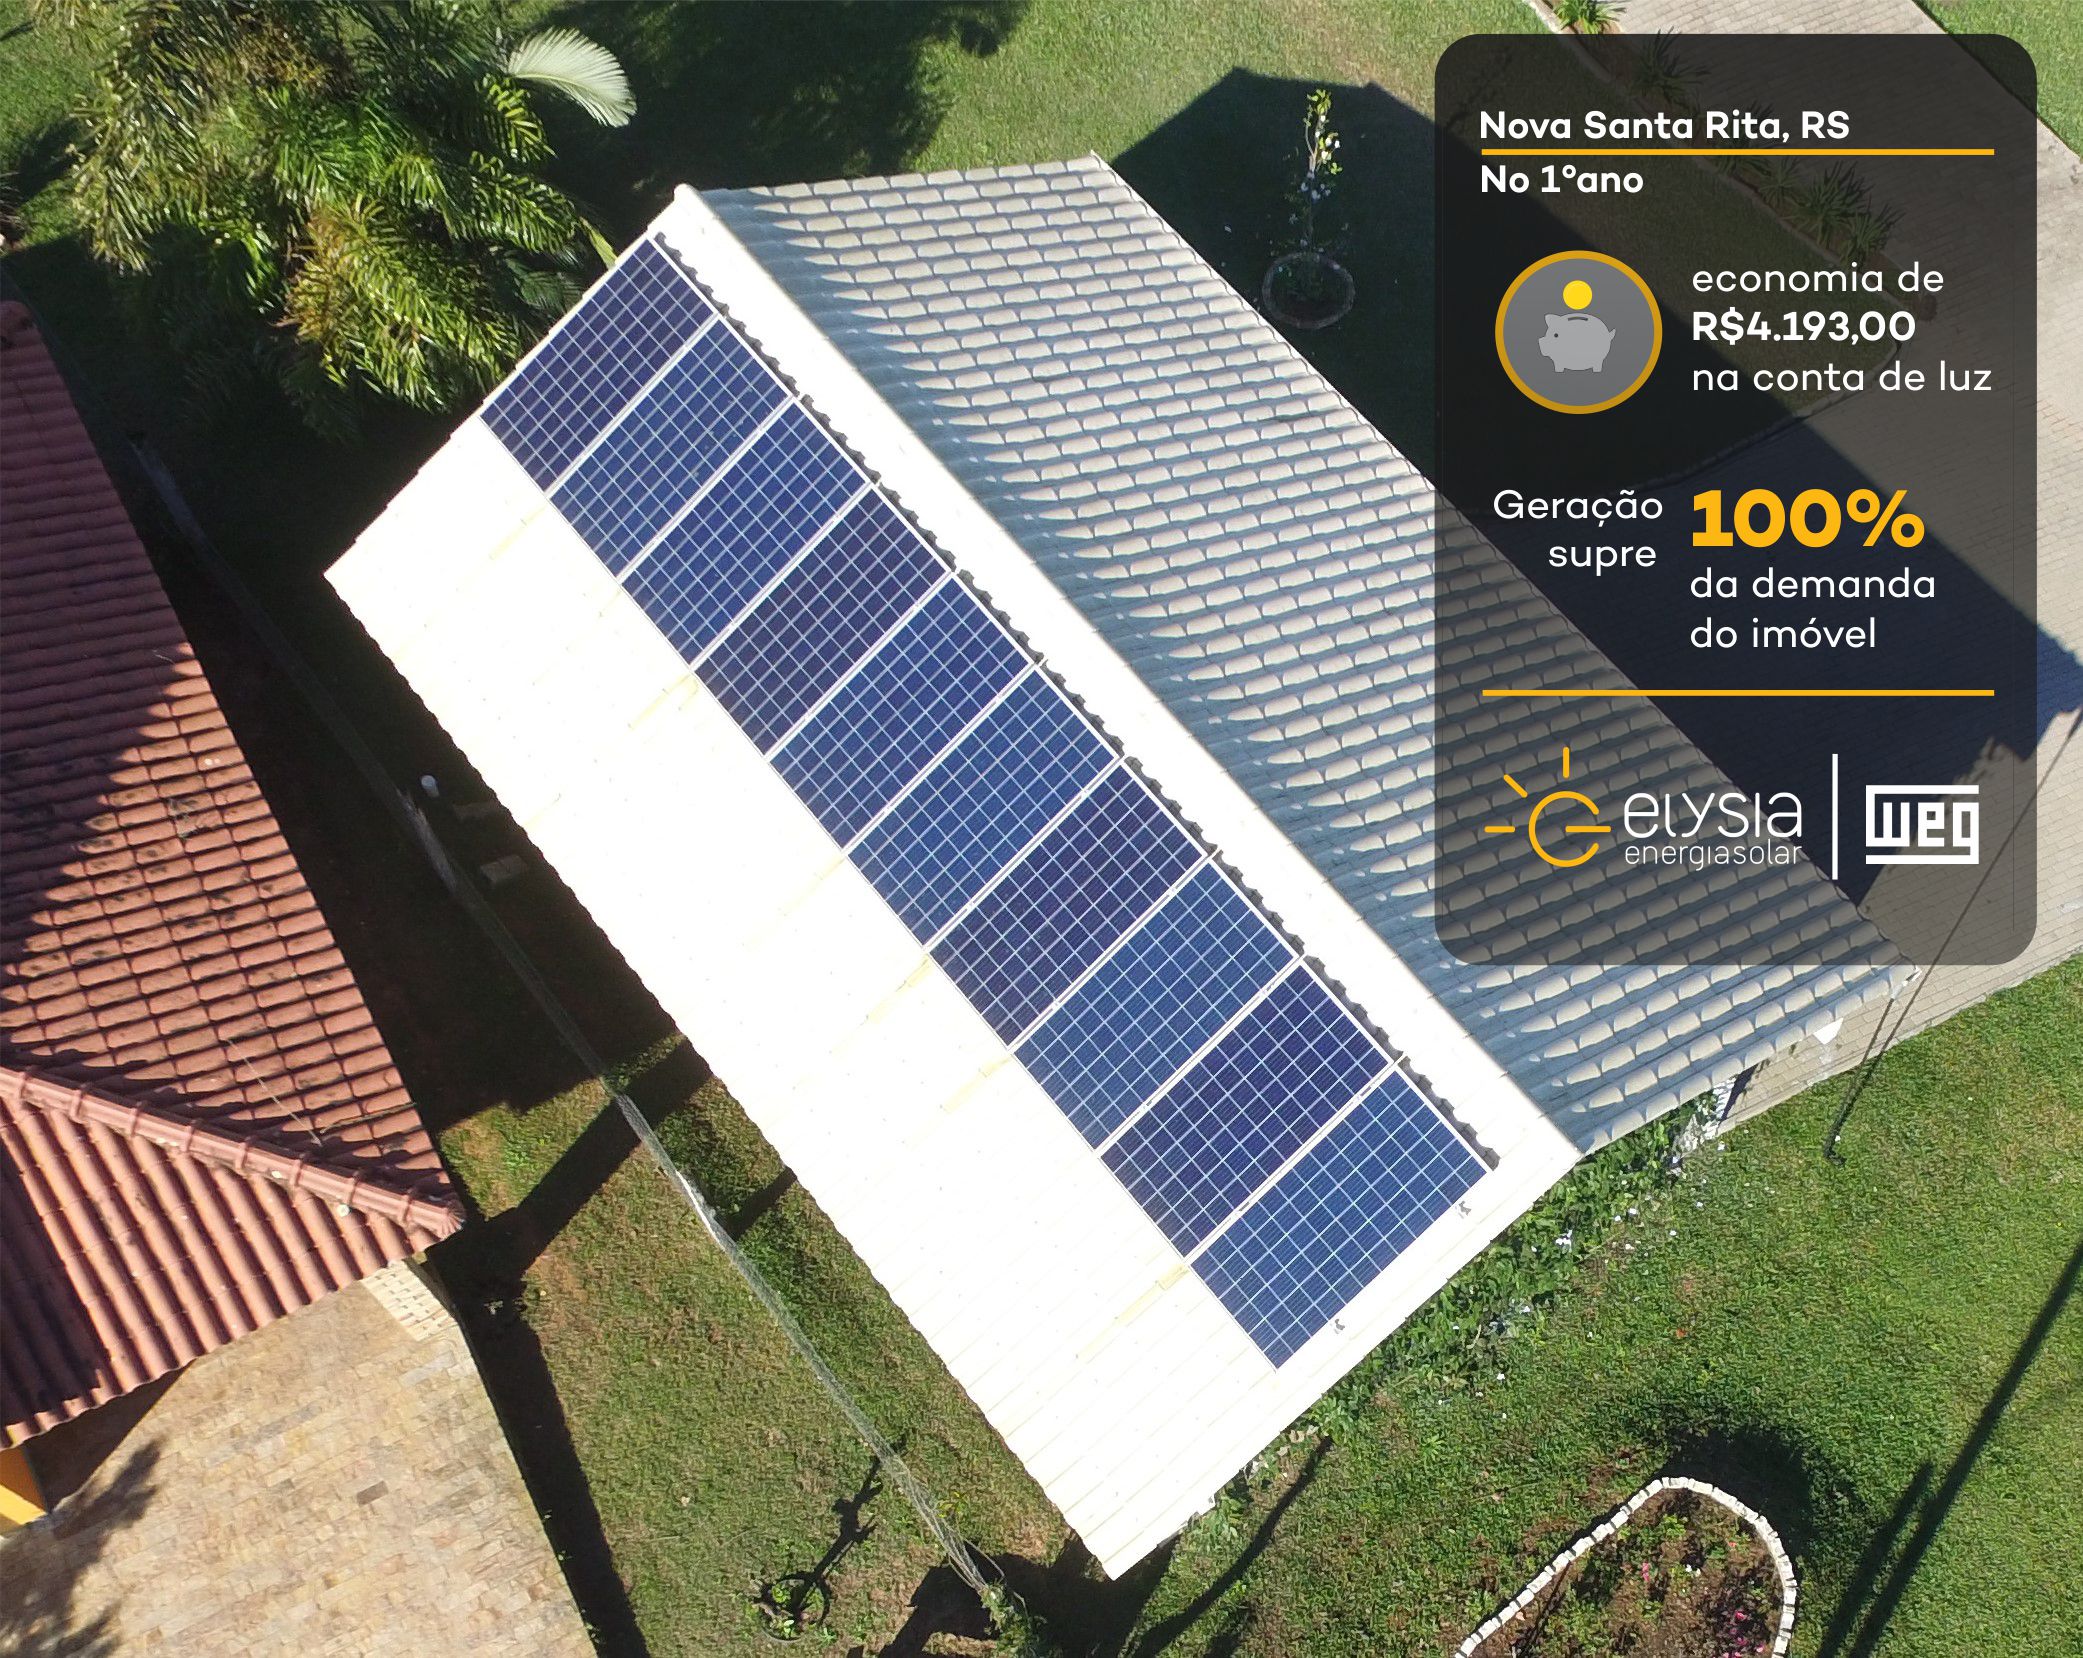 Com geração própria de energia limpa, casa de Nova Santa Rita vai economizar cerca de R$ 4 mil no primeiro ano com produção energética solar